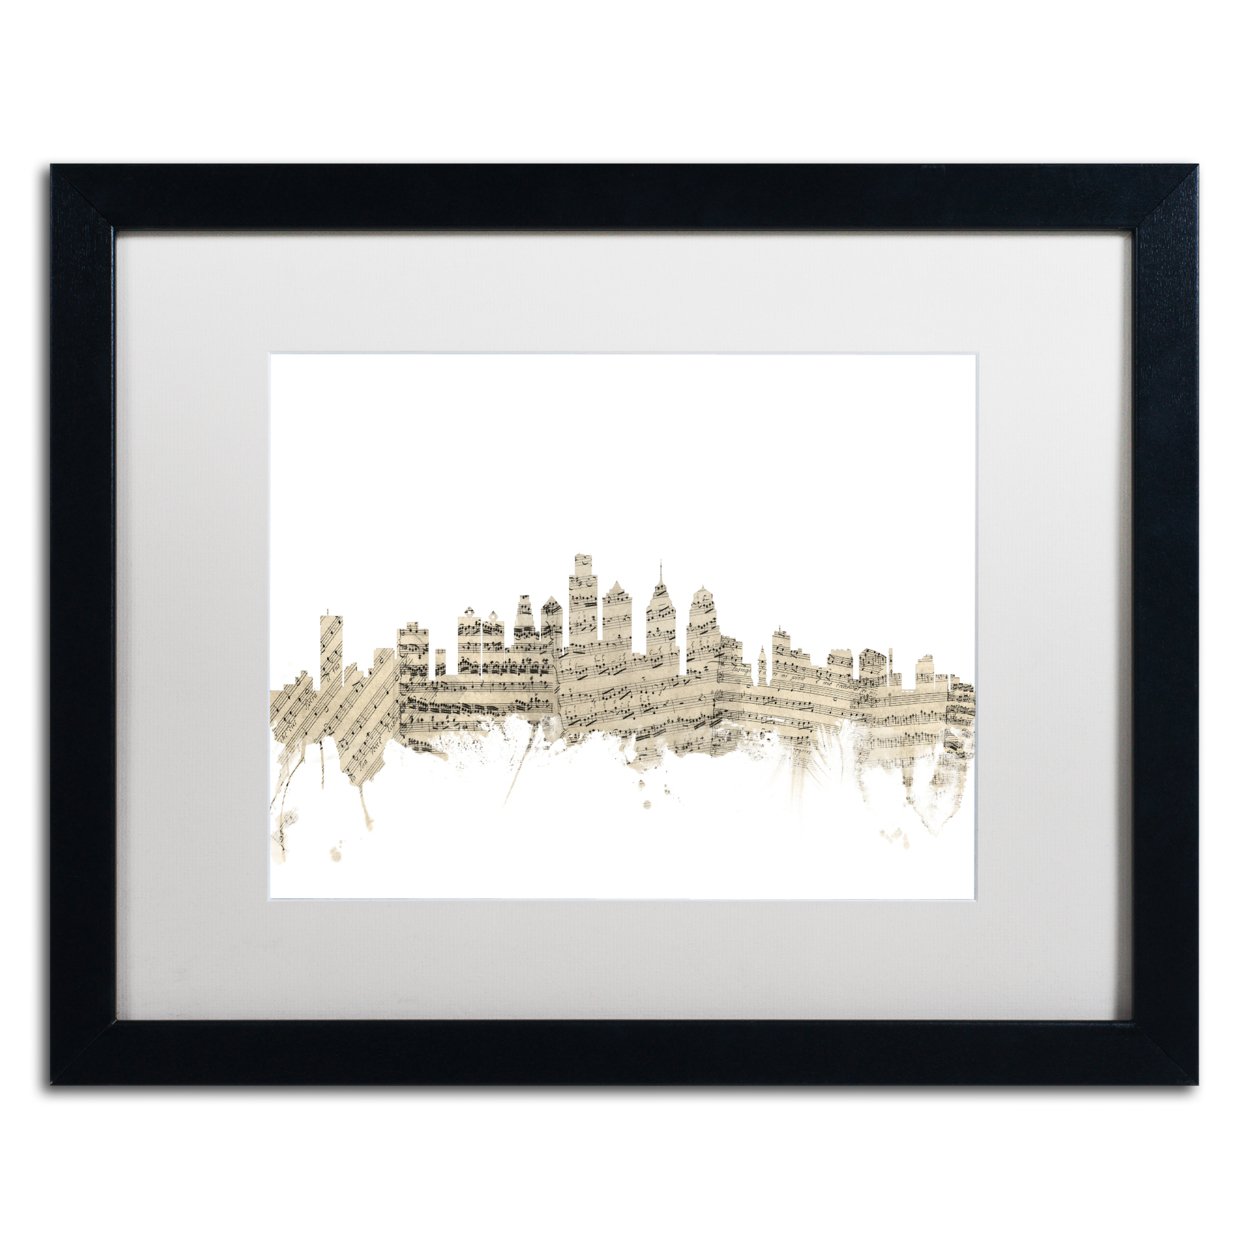 Michael Tompsett 'Philadelphia Skyline Sheet Music' Black Wooden Framed Art 18 X 22 Inches